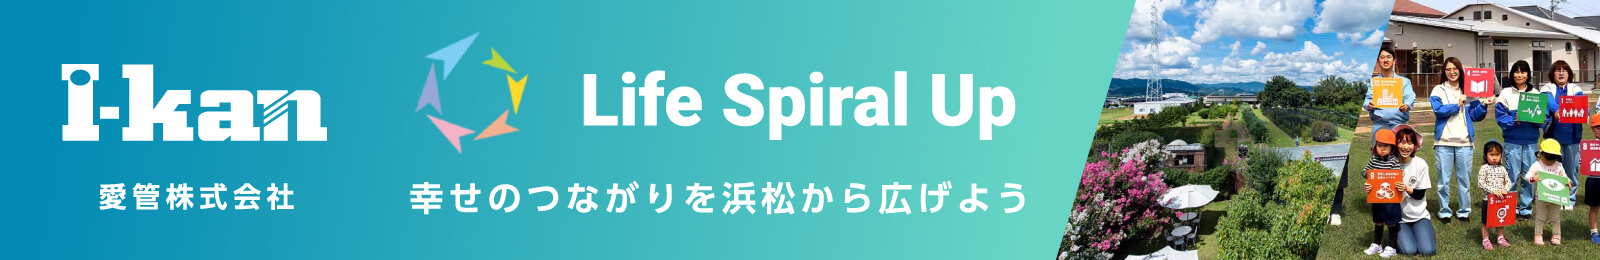 I-kan 愛管株式会社 Life Spiral Up 幸せのつながりを浜松から広げよう